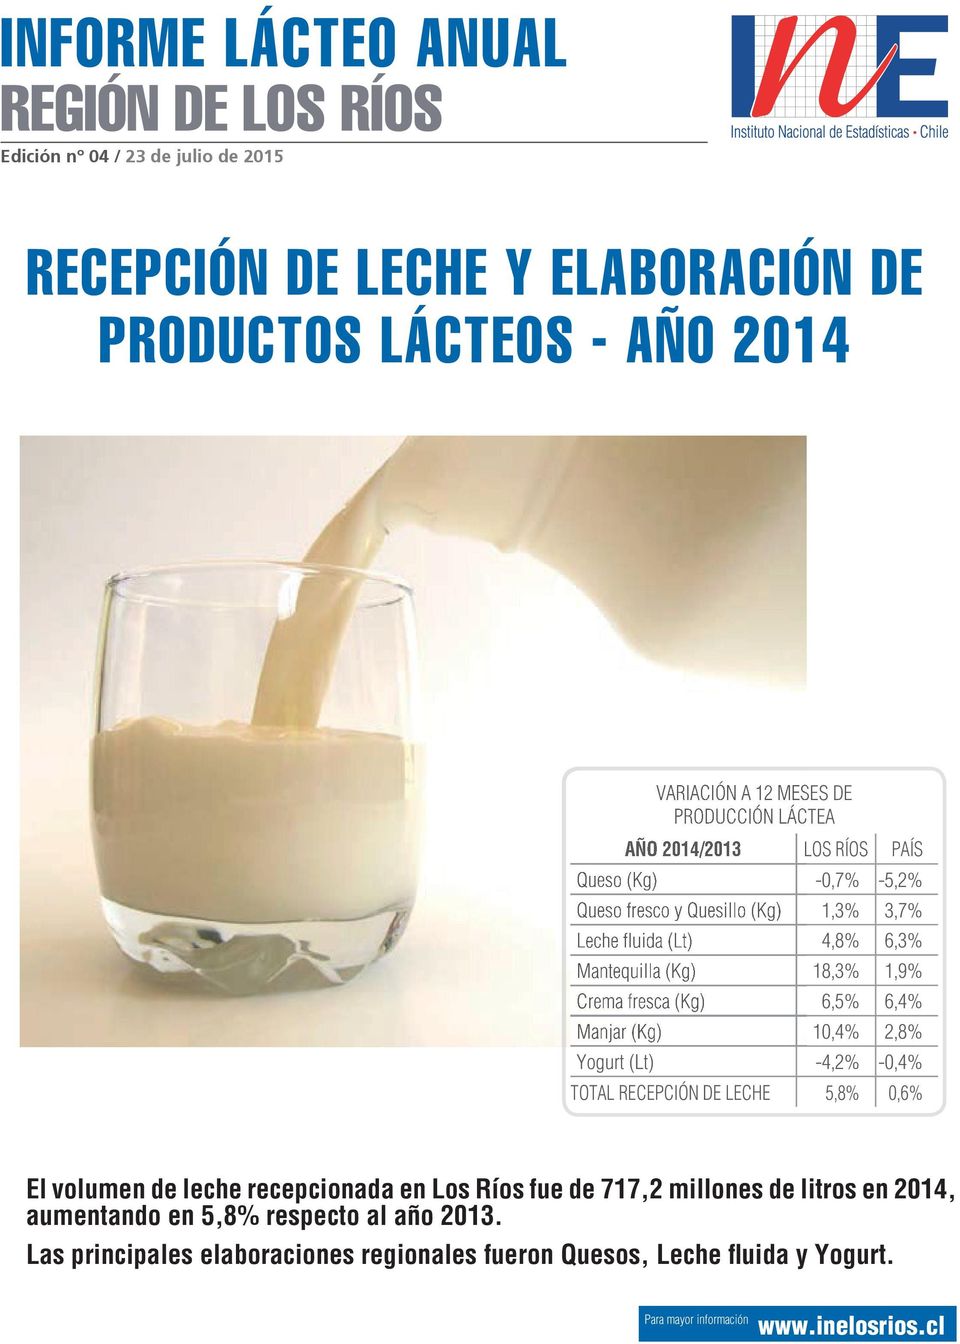 fresca (Kg) 6,5% 6,4% Manjar (Kg) 1,4% 2,8% Yogurt (Lt) -4,2% -,4% TOTAL RECEPCIÓN DE LECHE 5,8%,6% El volumen de leche recepcionada en Los Ríos fue de 717,2 millones